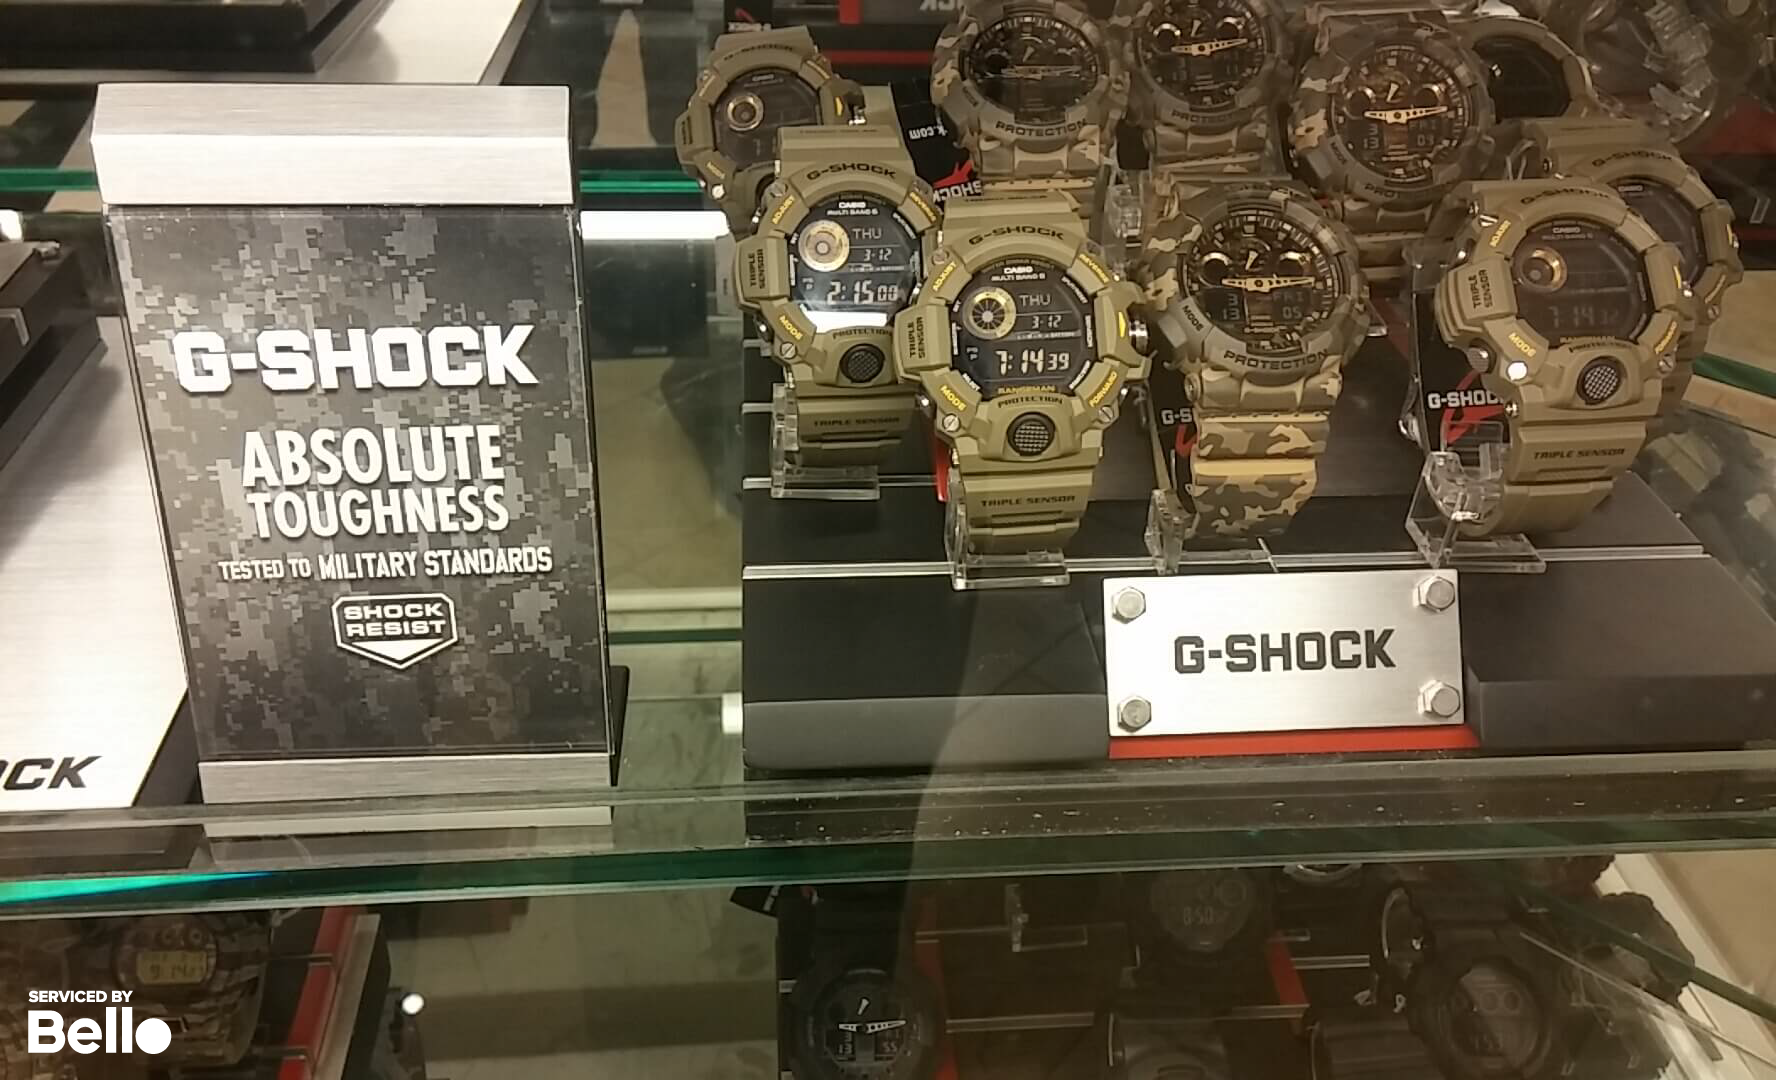 Top Đồng hồ G-Shock tốt nhất dành cho quân đội tầm giá 2,5 triệu đồng